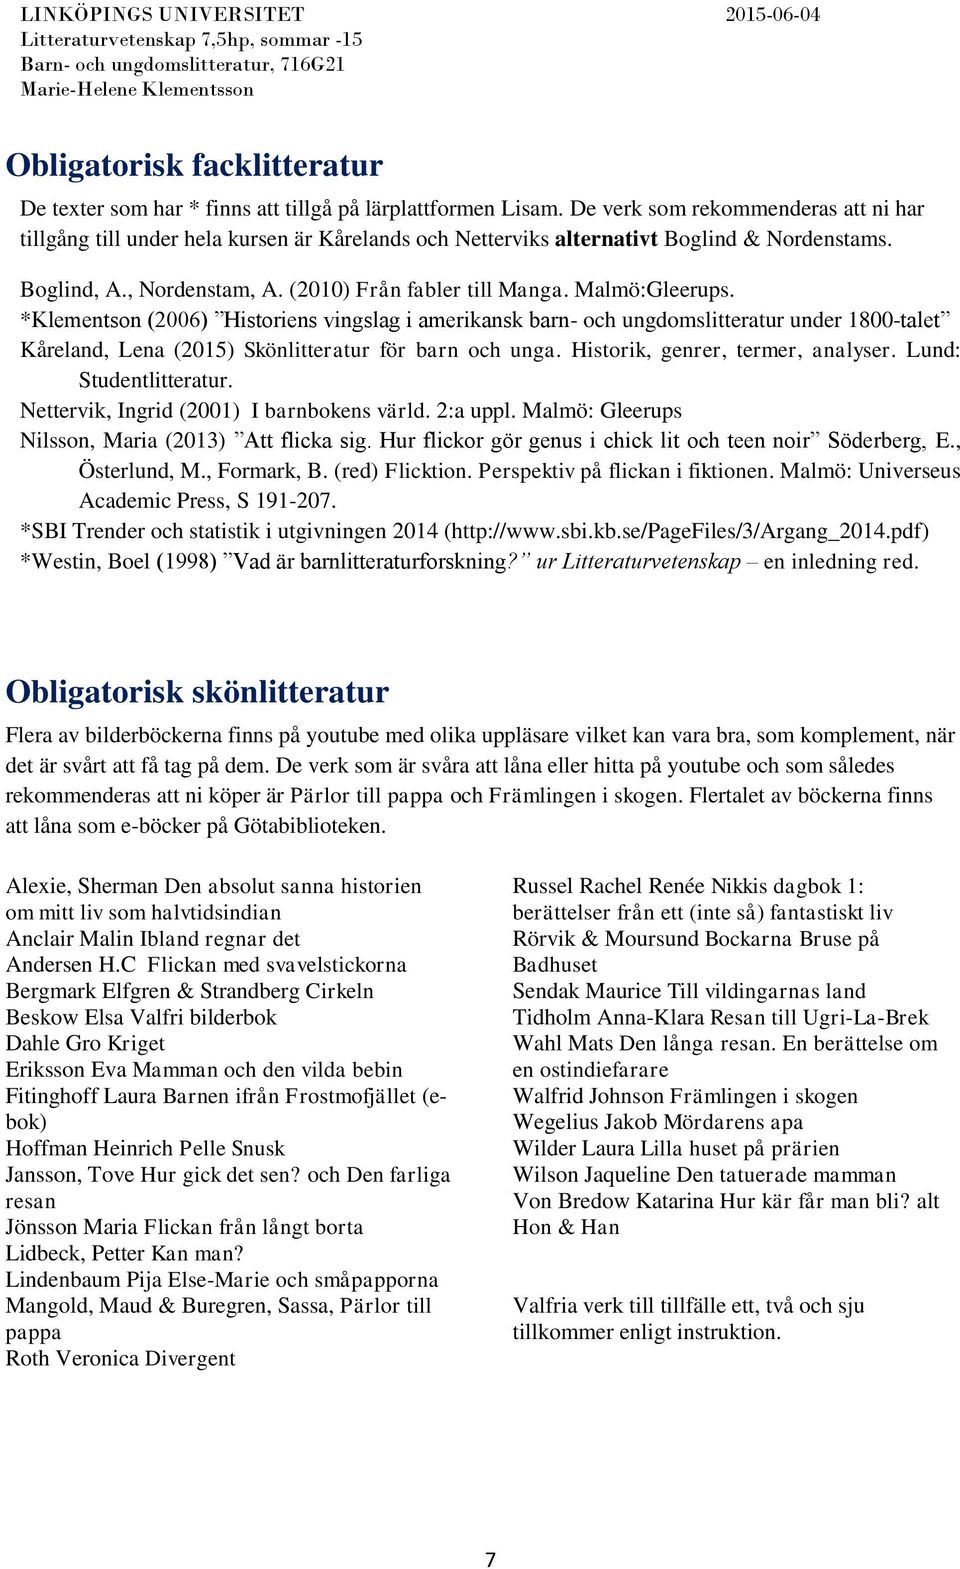 Malmö:Gleerups. *Klementson (2006) Historiens vingslag i amerikansk barn- och ungdomslitteratur under 1800-talet Kåreland, Lena (2015) för barn och unga. Historik, genrer, termer, analyser.